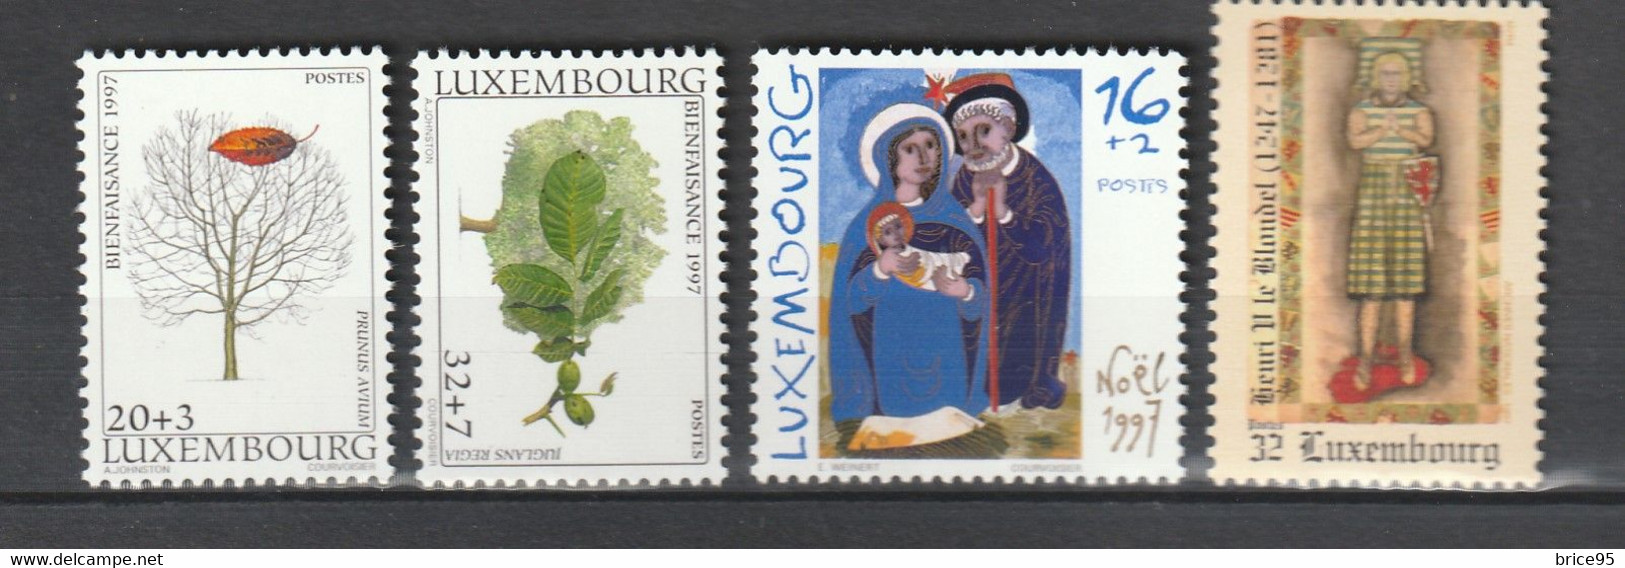 ⭐ Luxembourg - YT N ° 1360 à 1386 ** - Année Complète - Neuf Sans Charnière - 1997 ⭐ - Años Completos